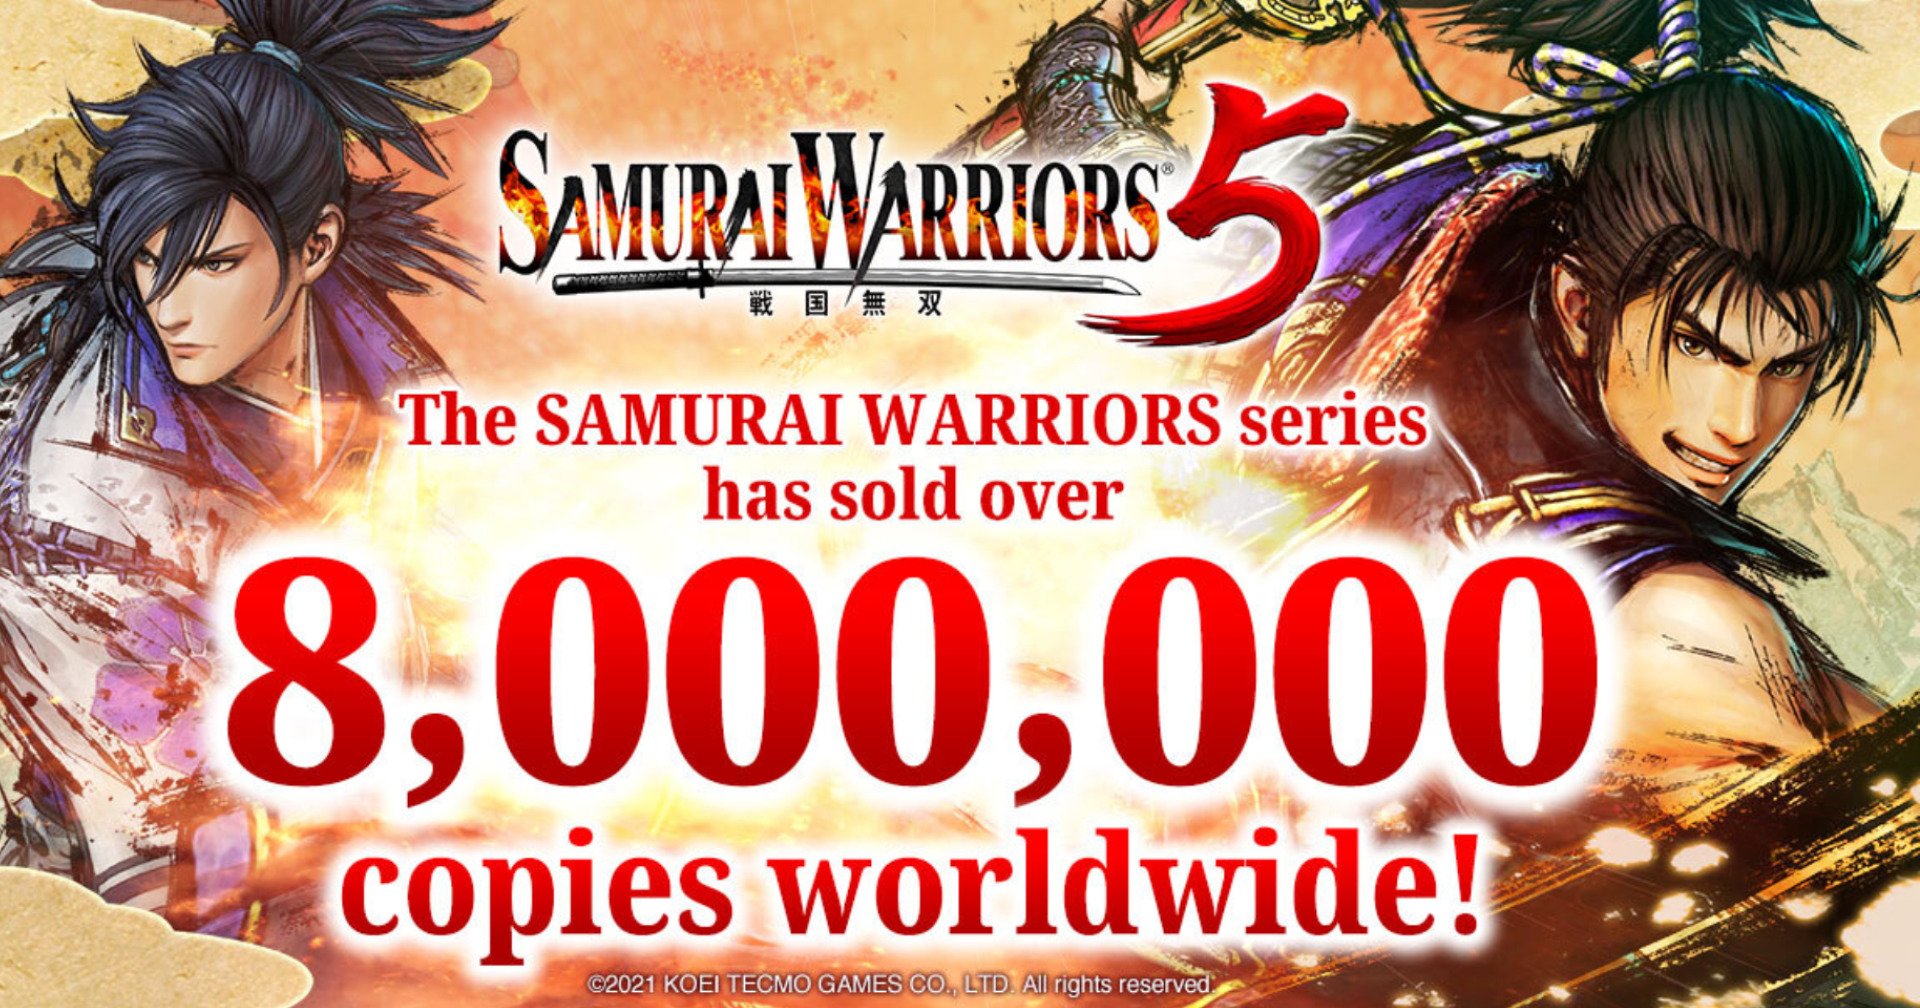 ยอดขายซีรีส์เกม Samurai Warriors ทะลุ 8 ล้านชุดทั่วโลก